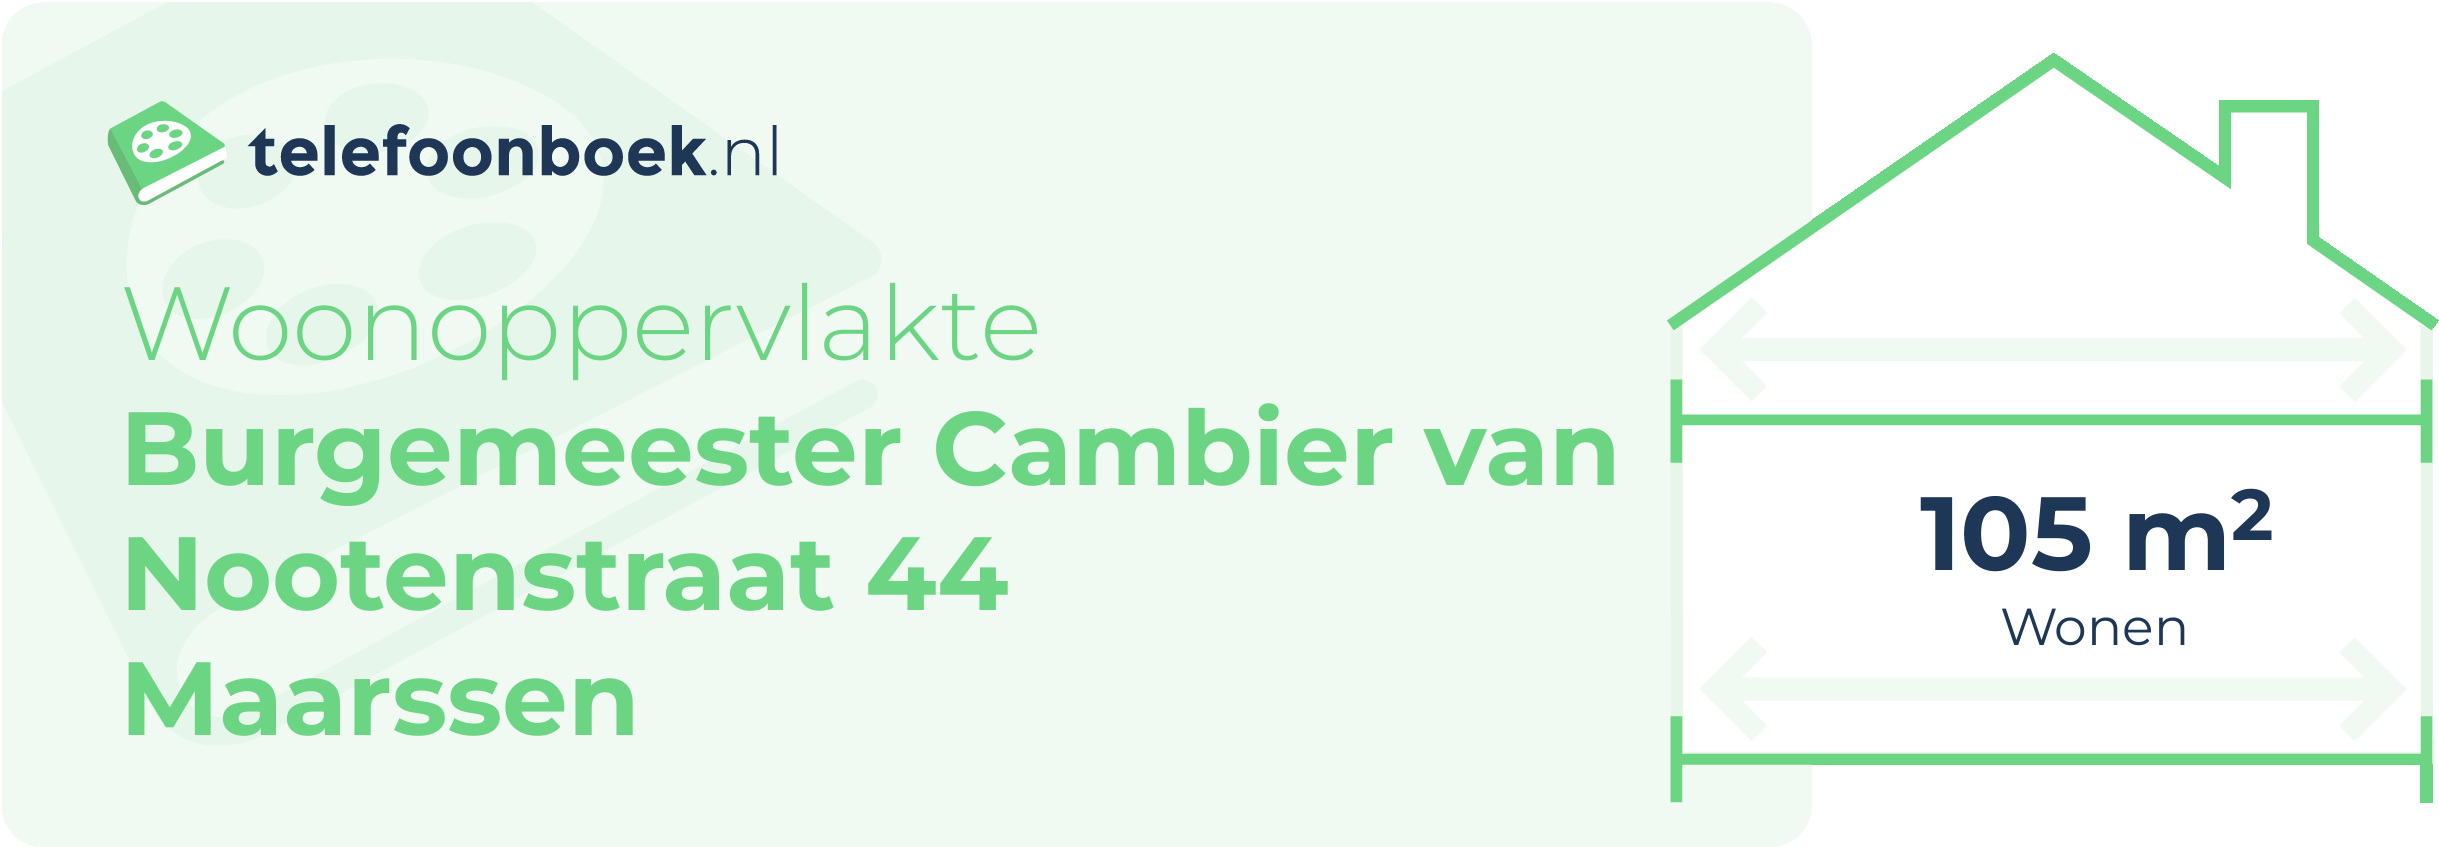 Woonoppervlakte Burgemeester Cambier Van Nootenstraat 44 Maarssen